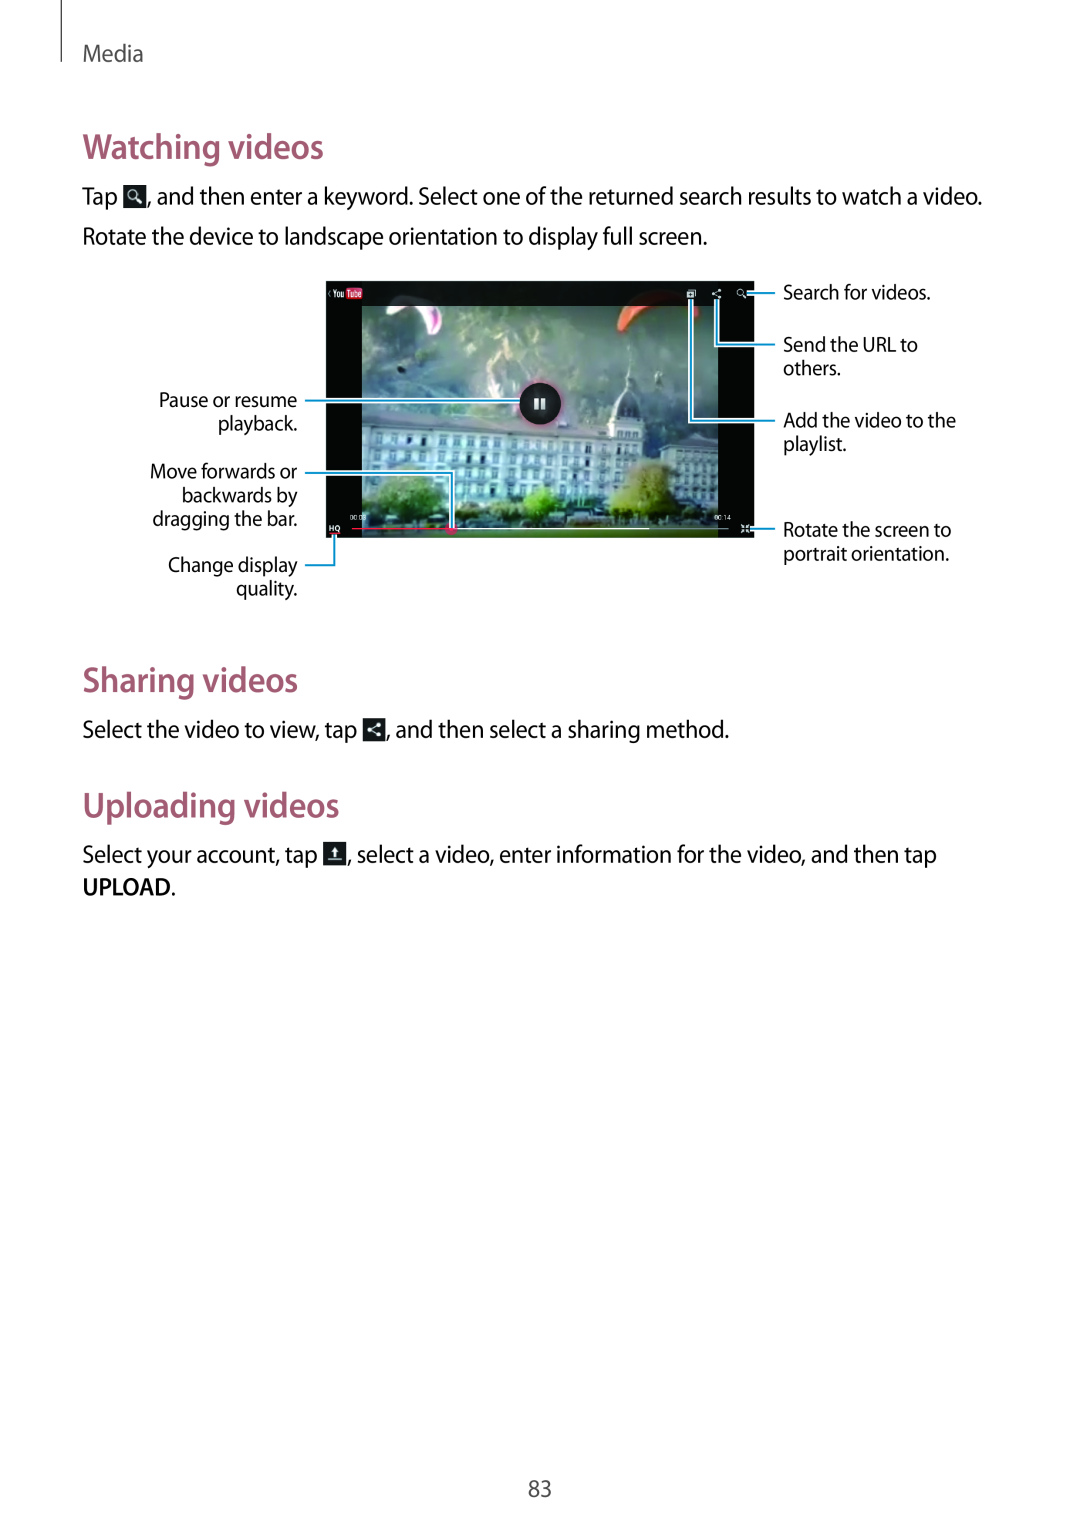 Samsung GT-N5100 user manual Watching videos, Uploading videos, Sharing videos, Media 